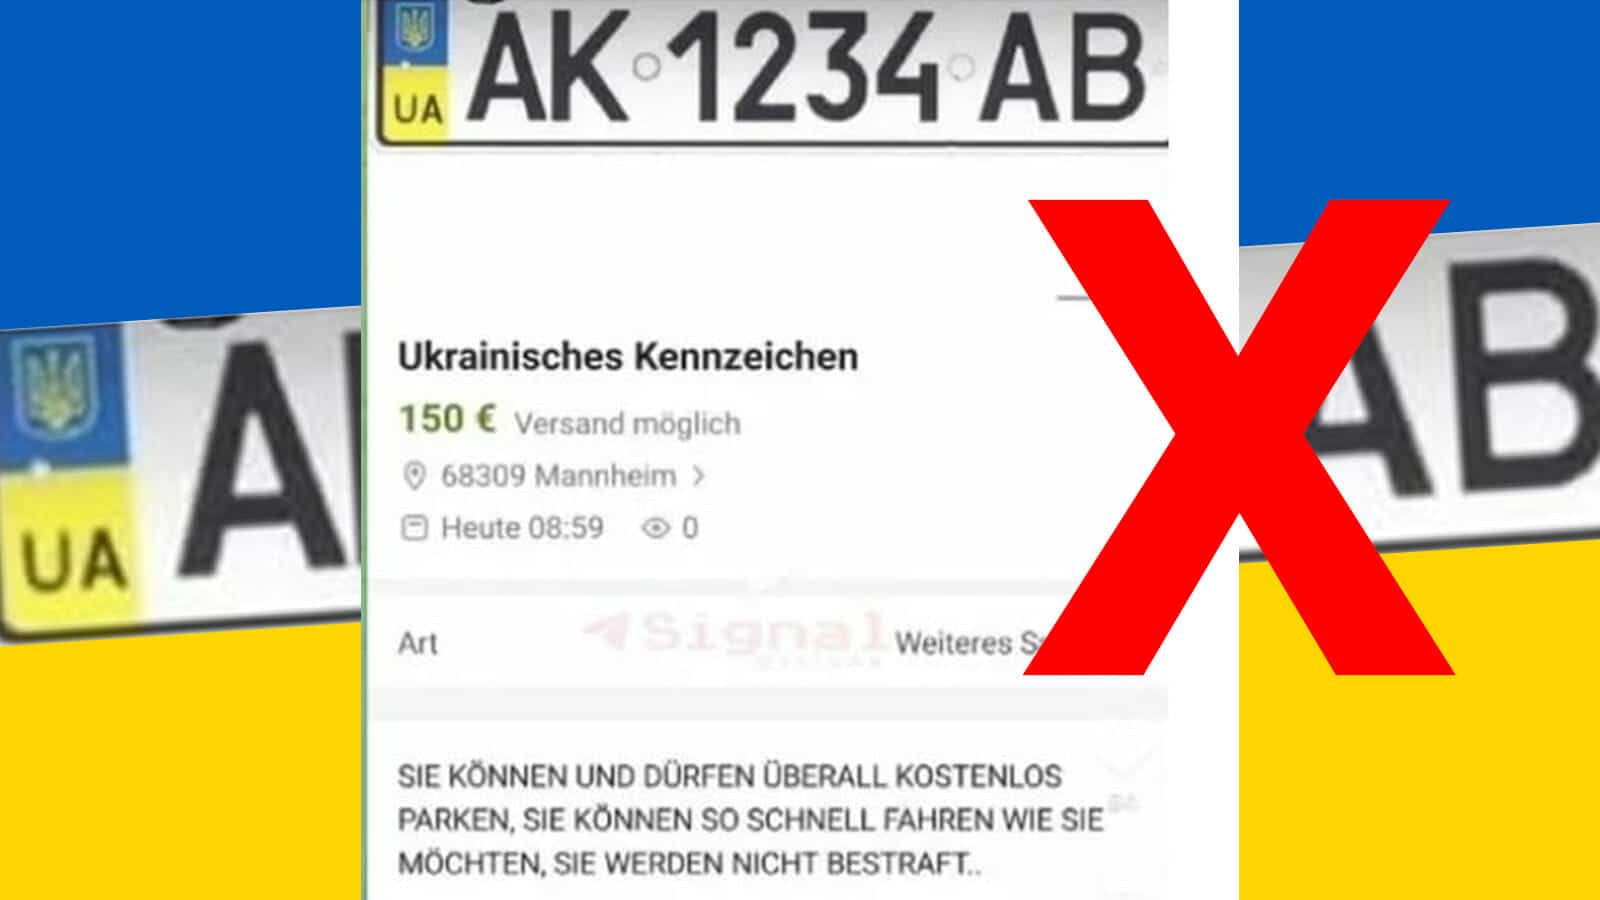 Mit Ukraine-Kennzeichen kostenlos parken? Eine gefälschte eBay-Kleinanzeige!